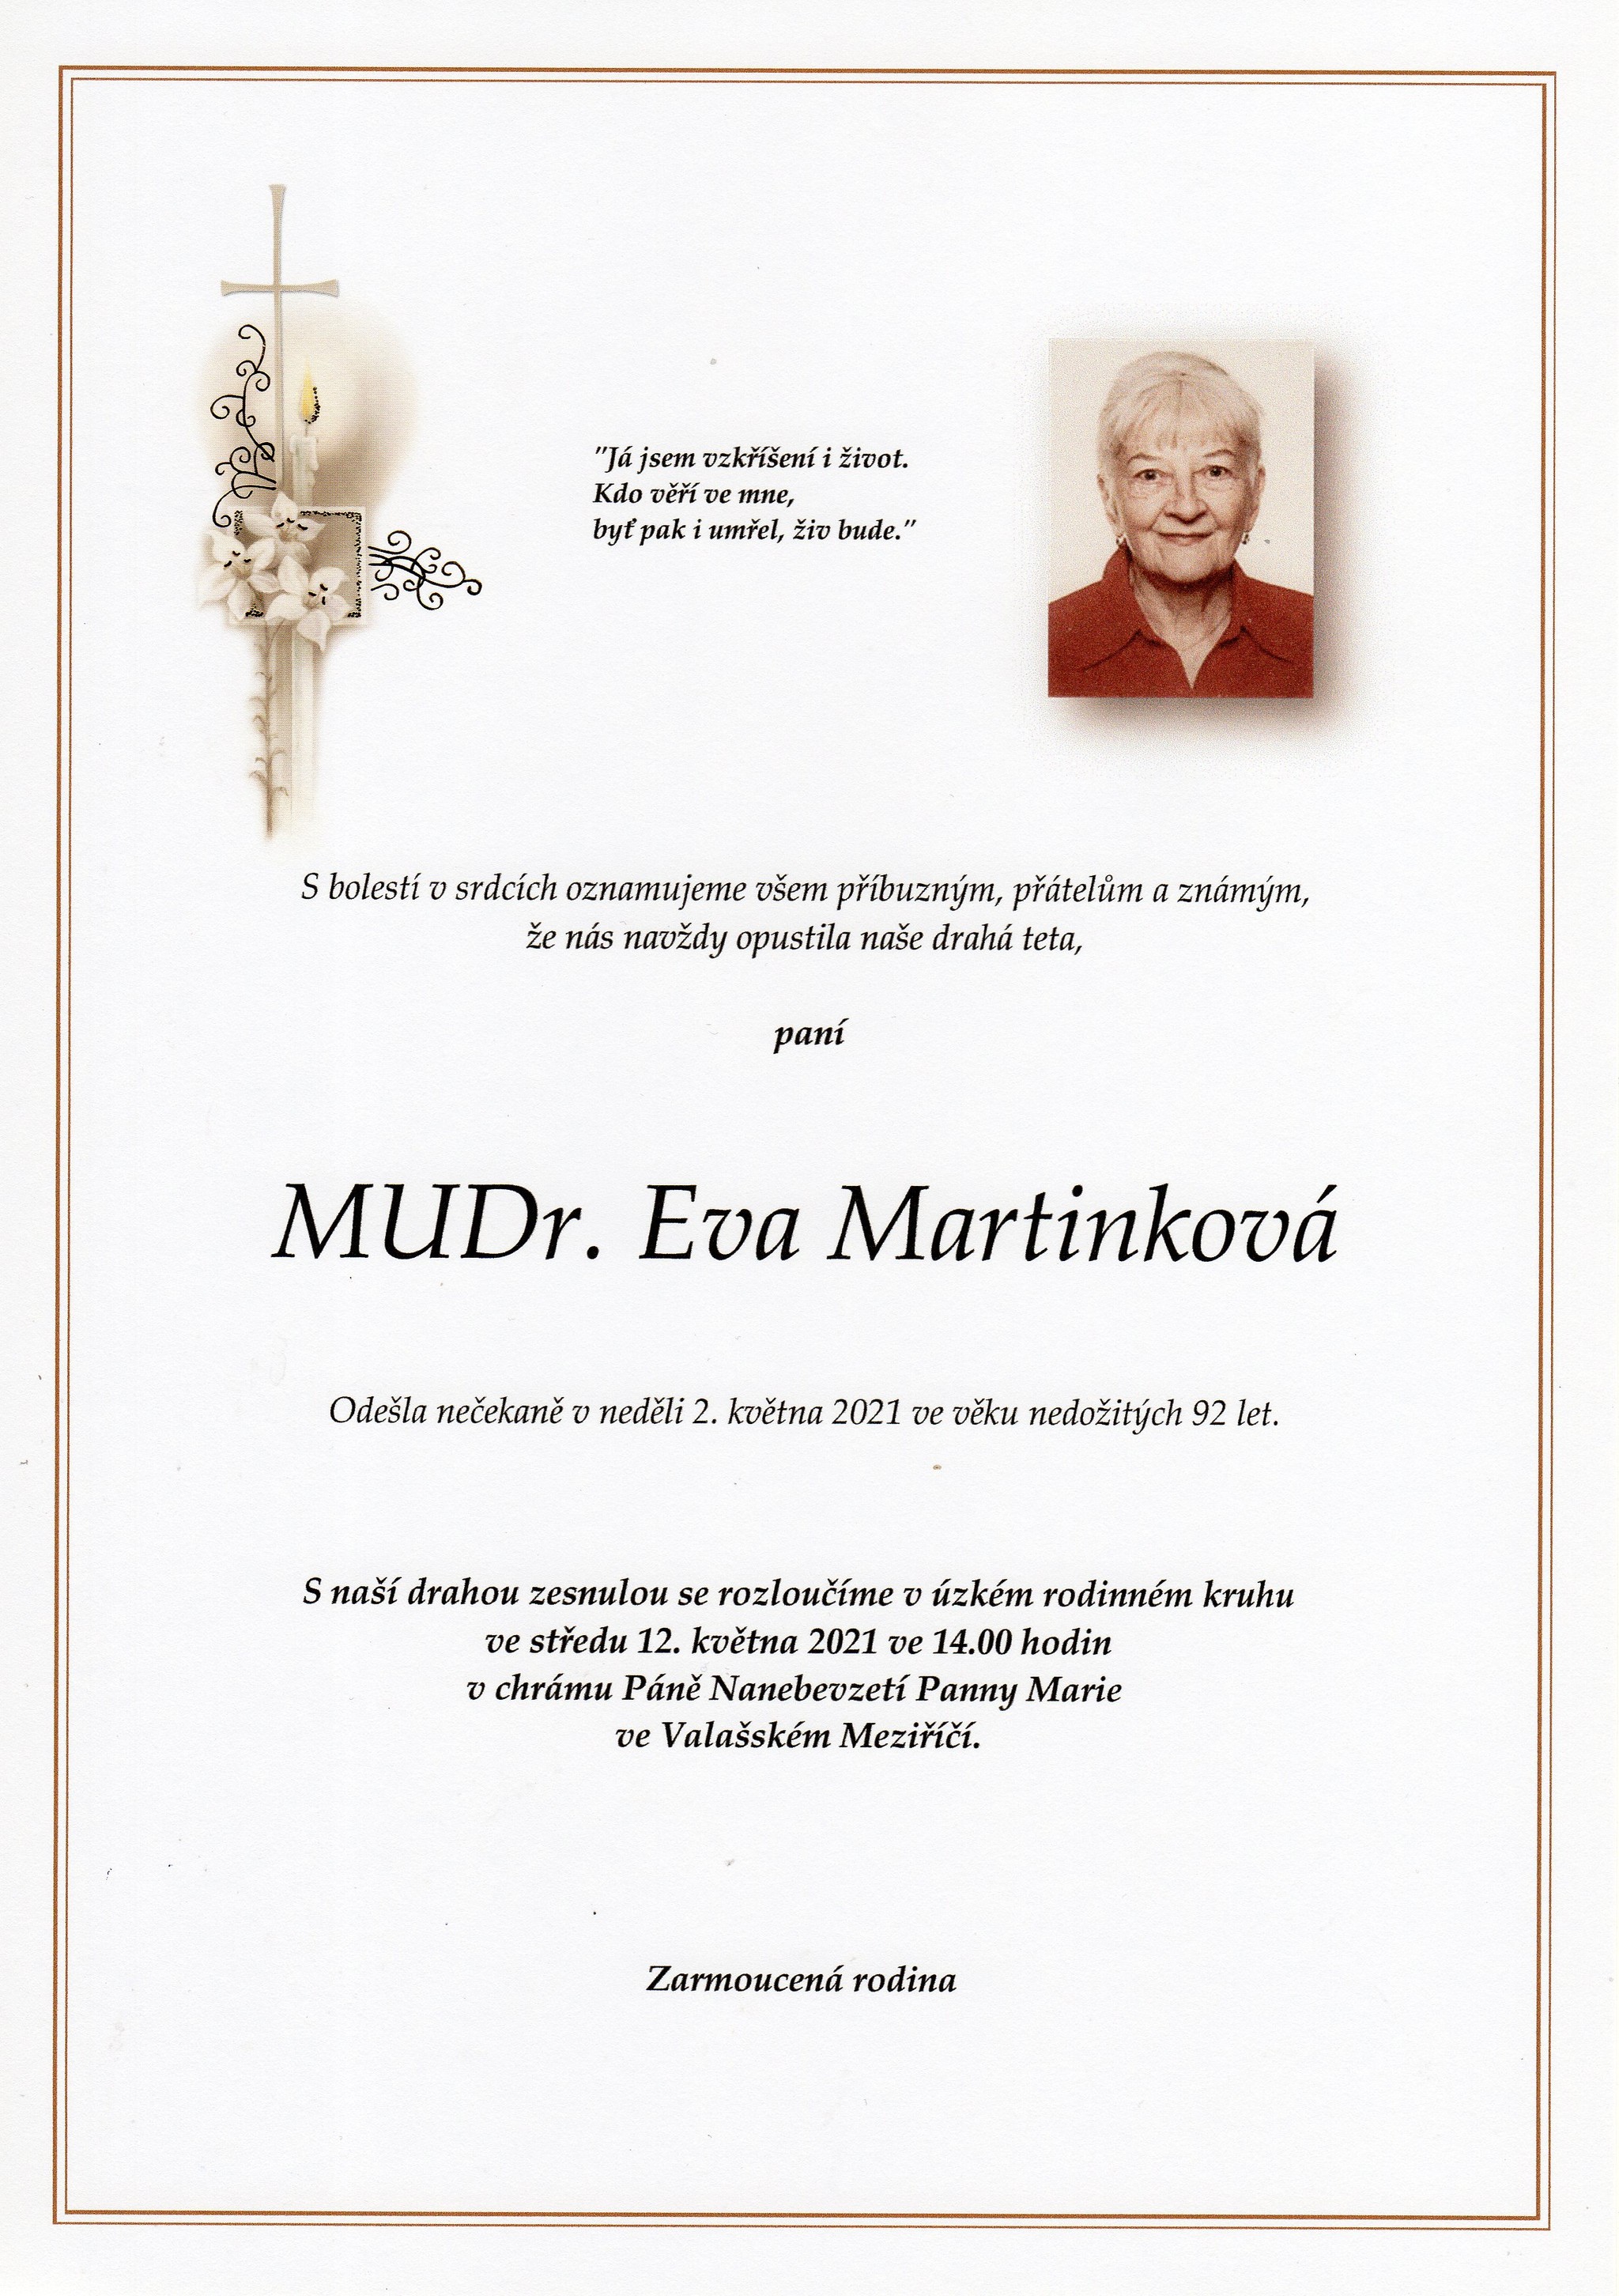 MUDr. Eva Martinková